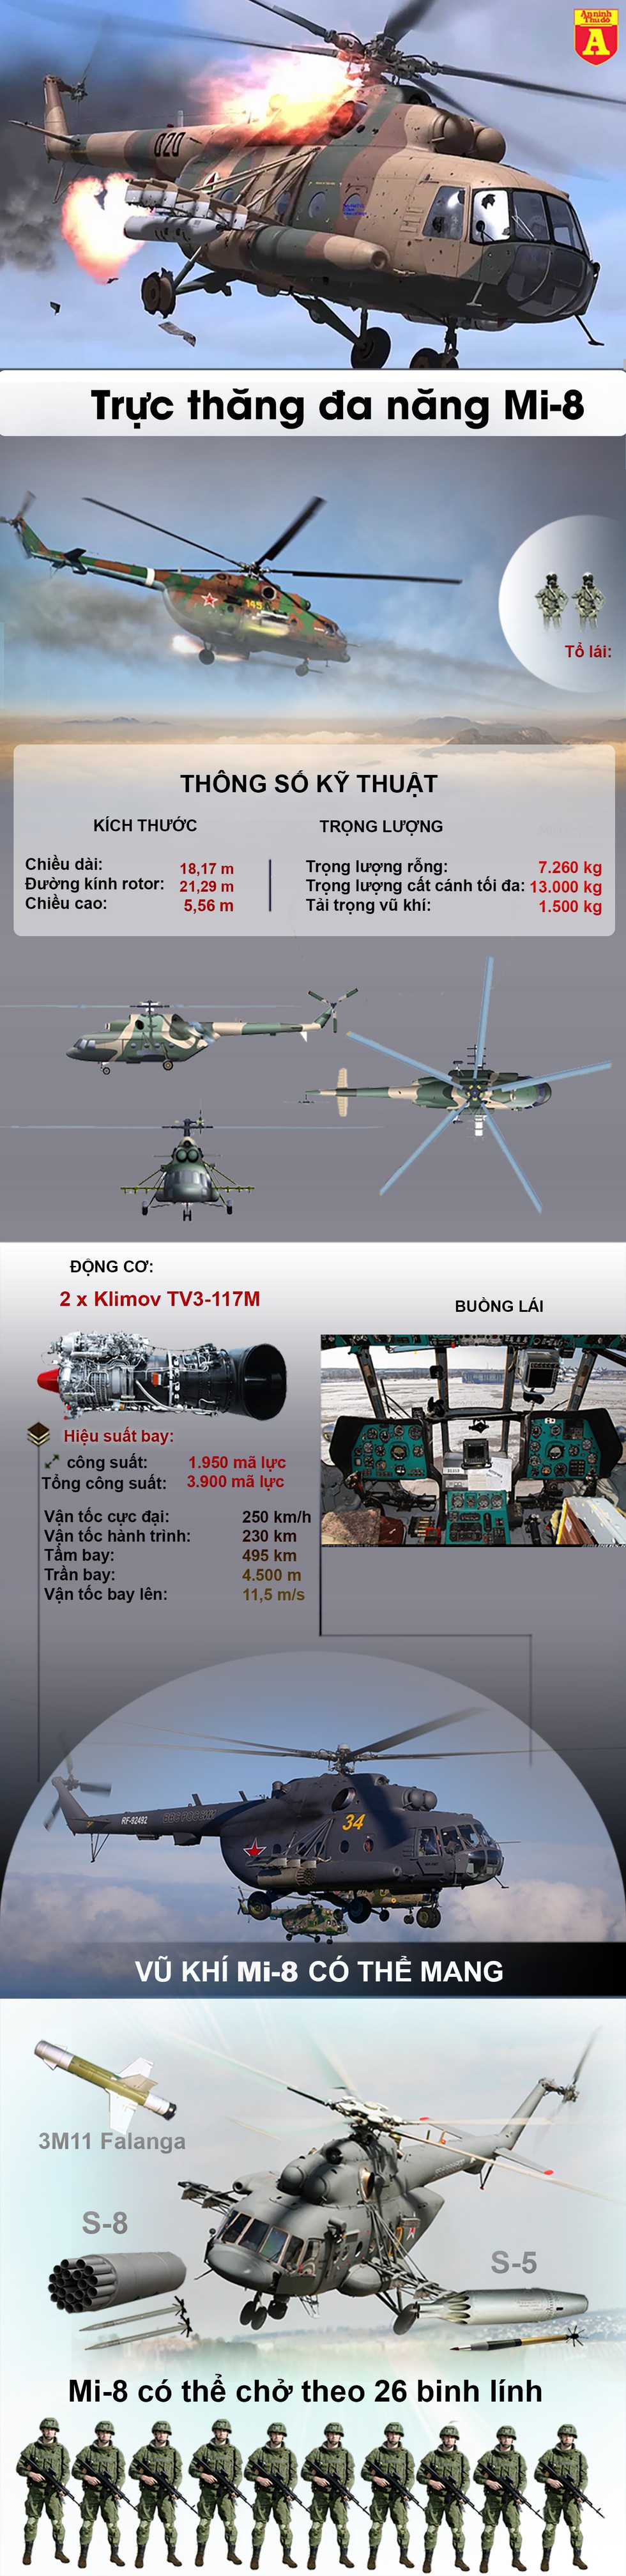 [Infographics] Trực thăng Mi-8 với phi hành đoàn người Ukraine bị súng chống tăng bắn hạ - Ảnh 1